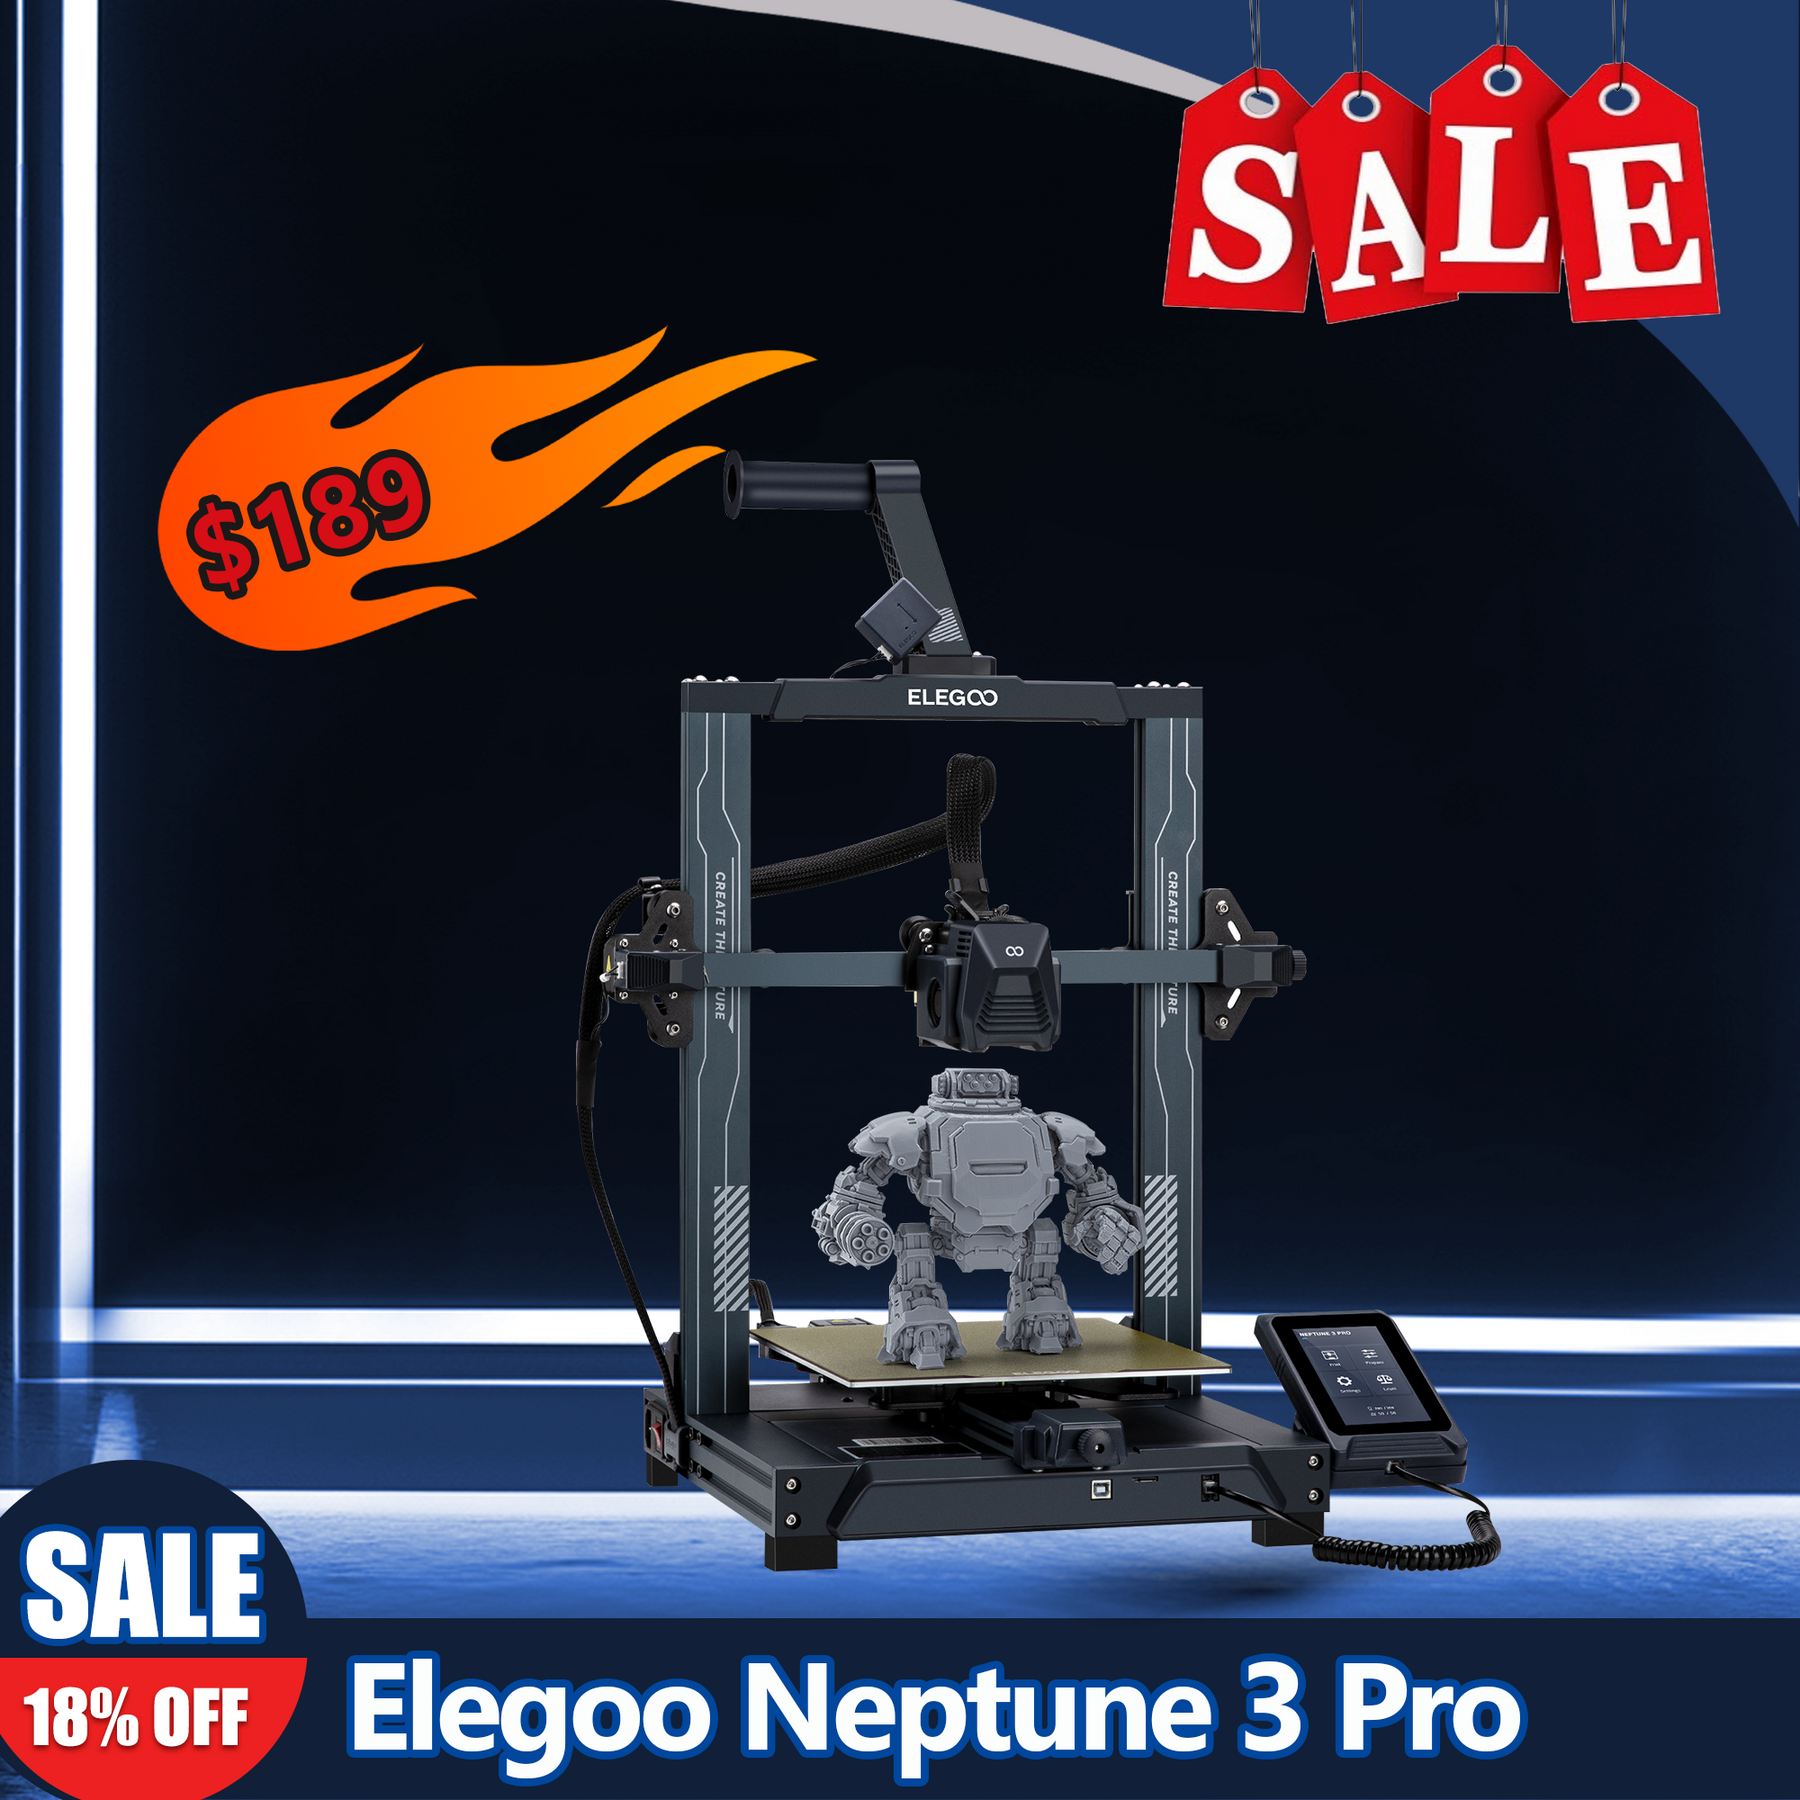 Elegoo Neptune 3 Pro Review